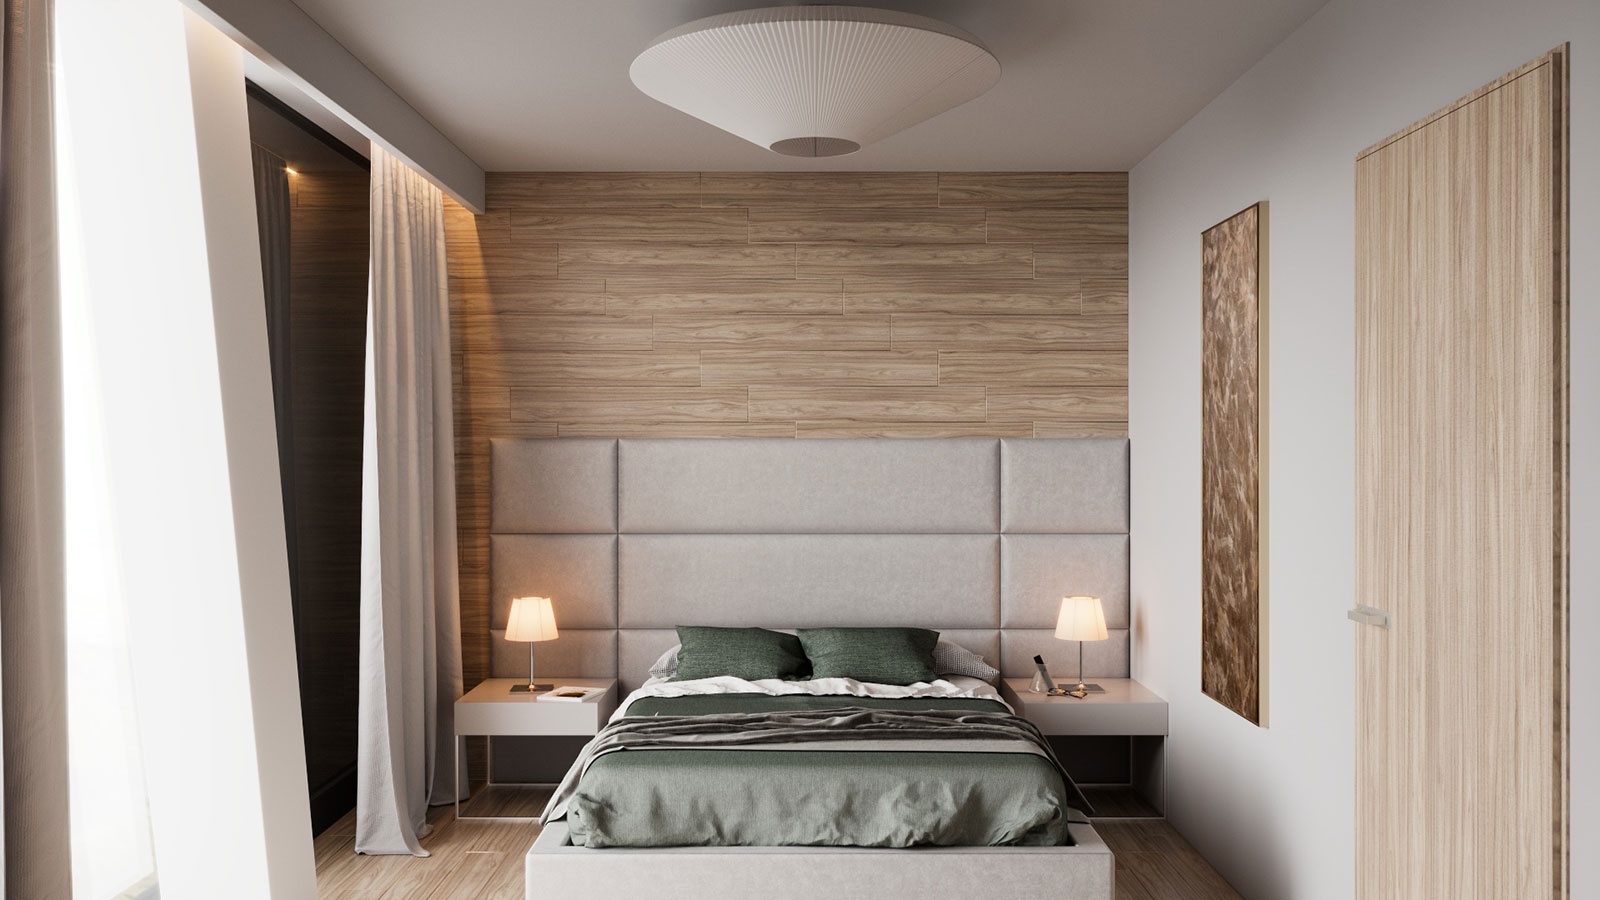 Nógrádi design bedroom